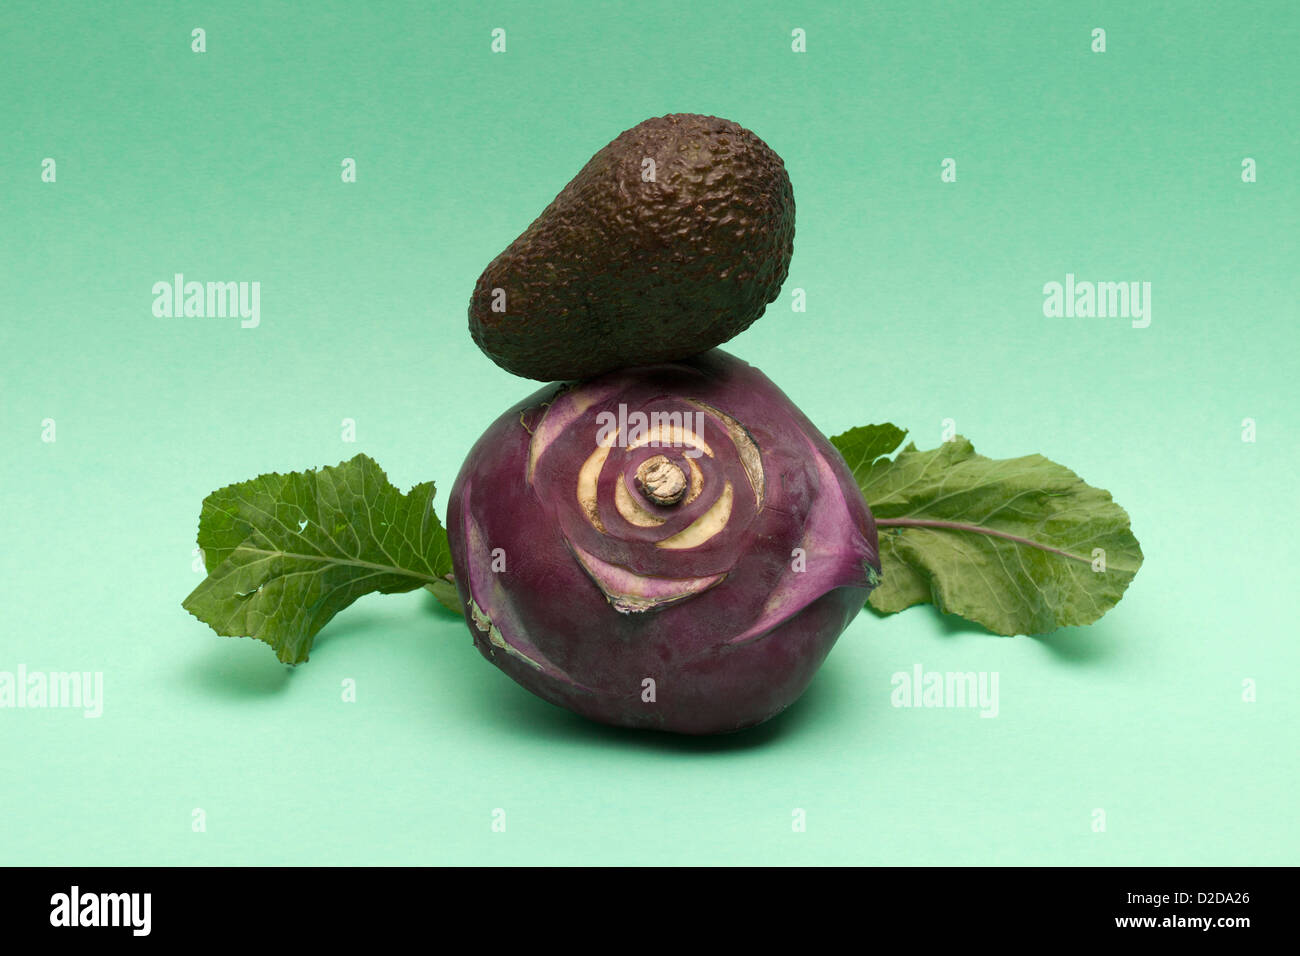 Eine abstrakte Anordnung von Salatblatt, Avocado und kohlrabi Stockfoto